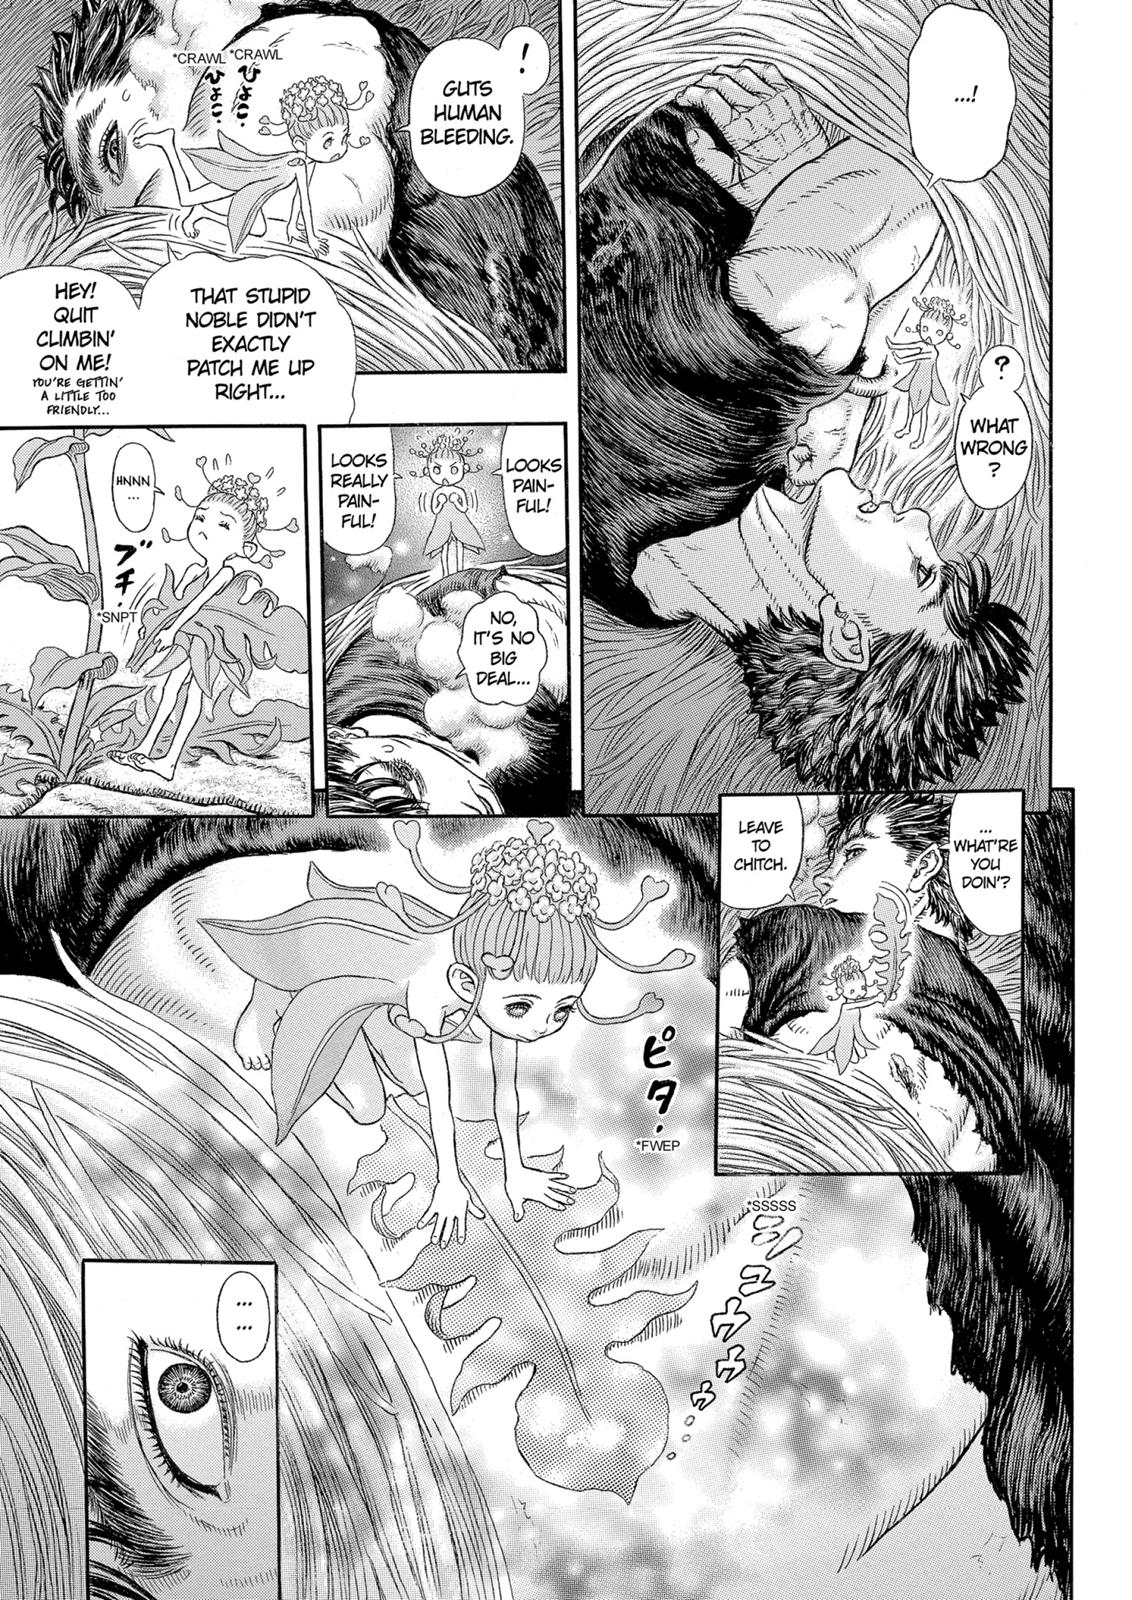 Berserk Manga Chapter 330 image 12